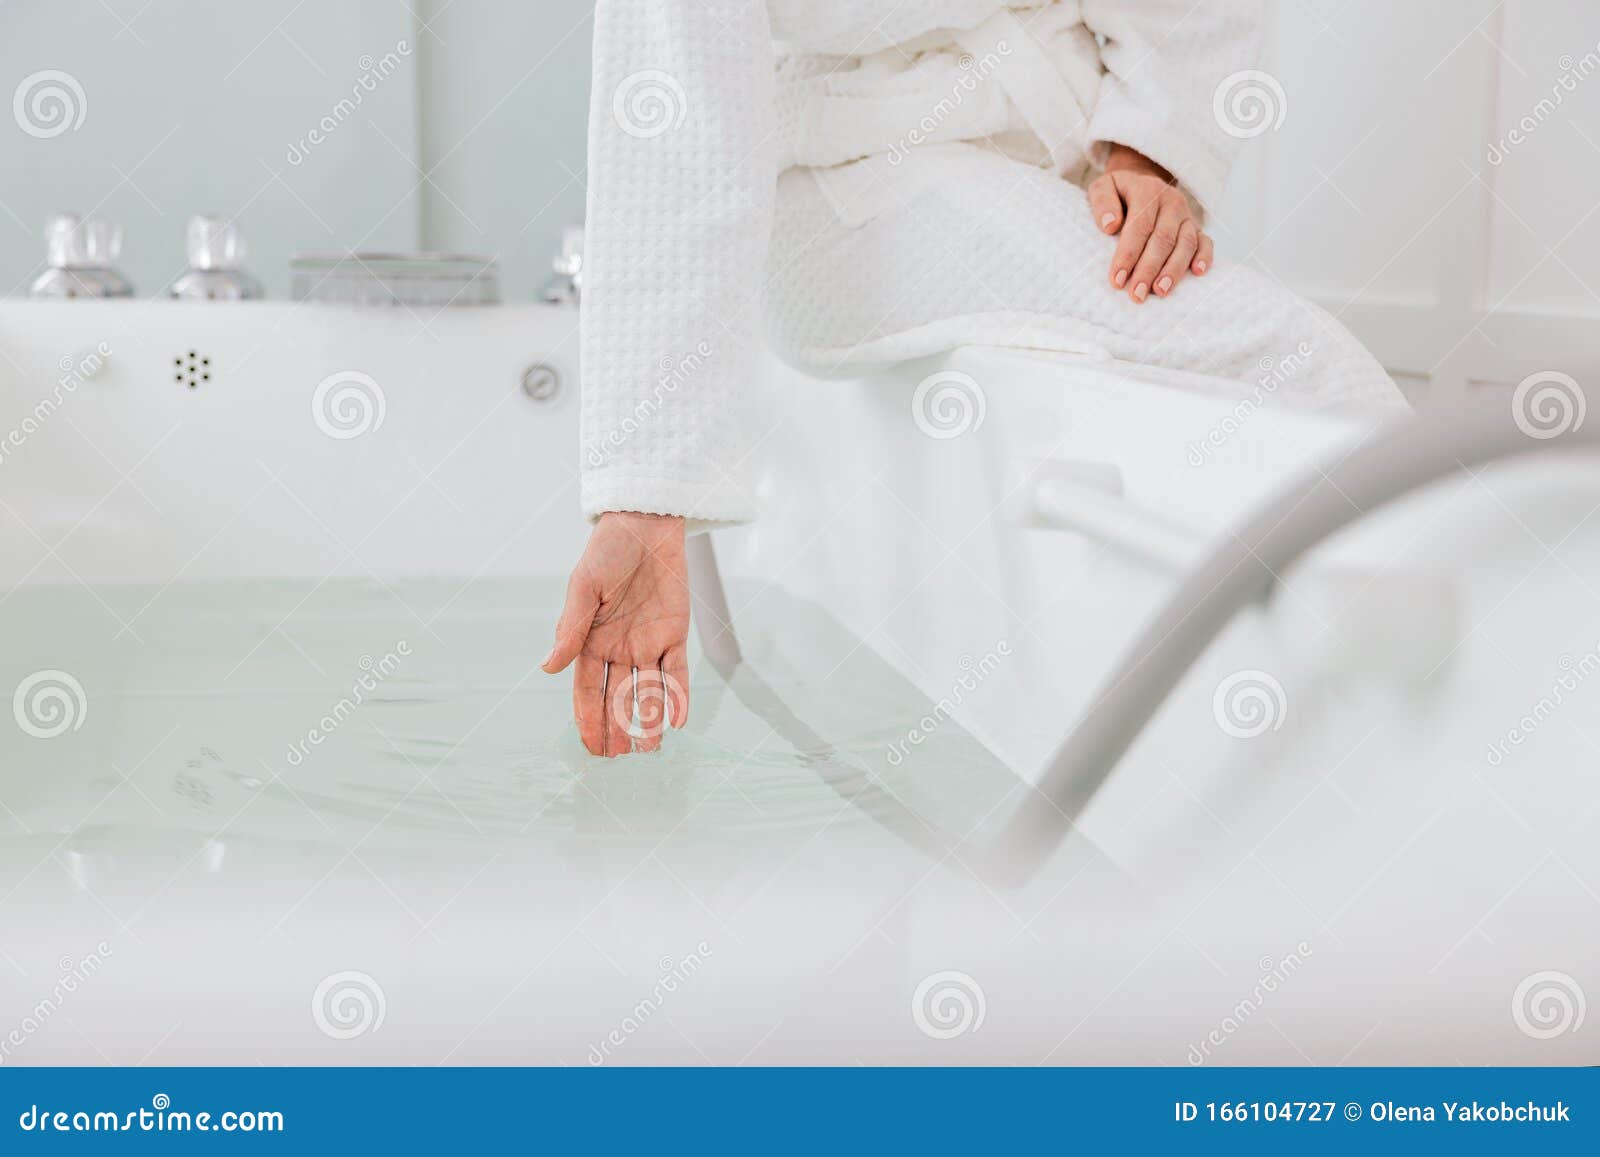 性感清纯美女浴室湿身诱惑高清私房写真图片(2)_配图网